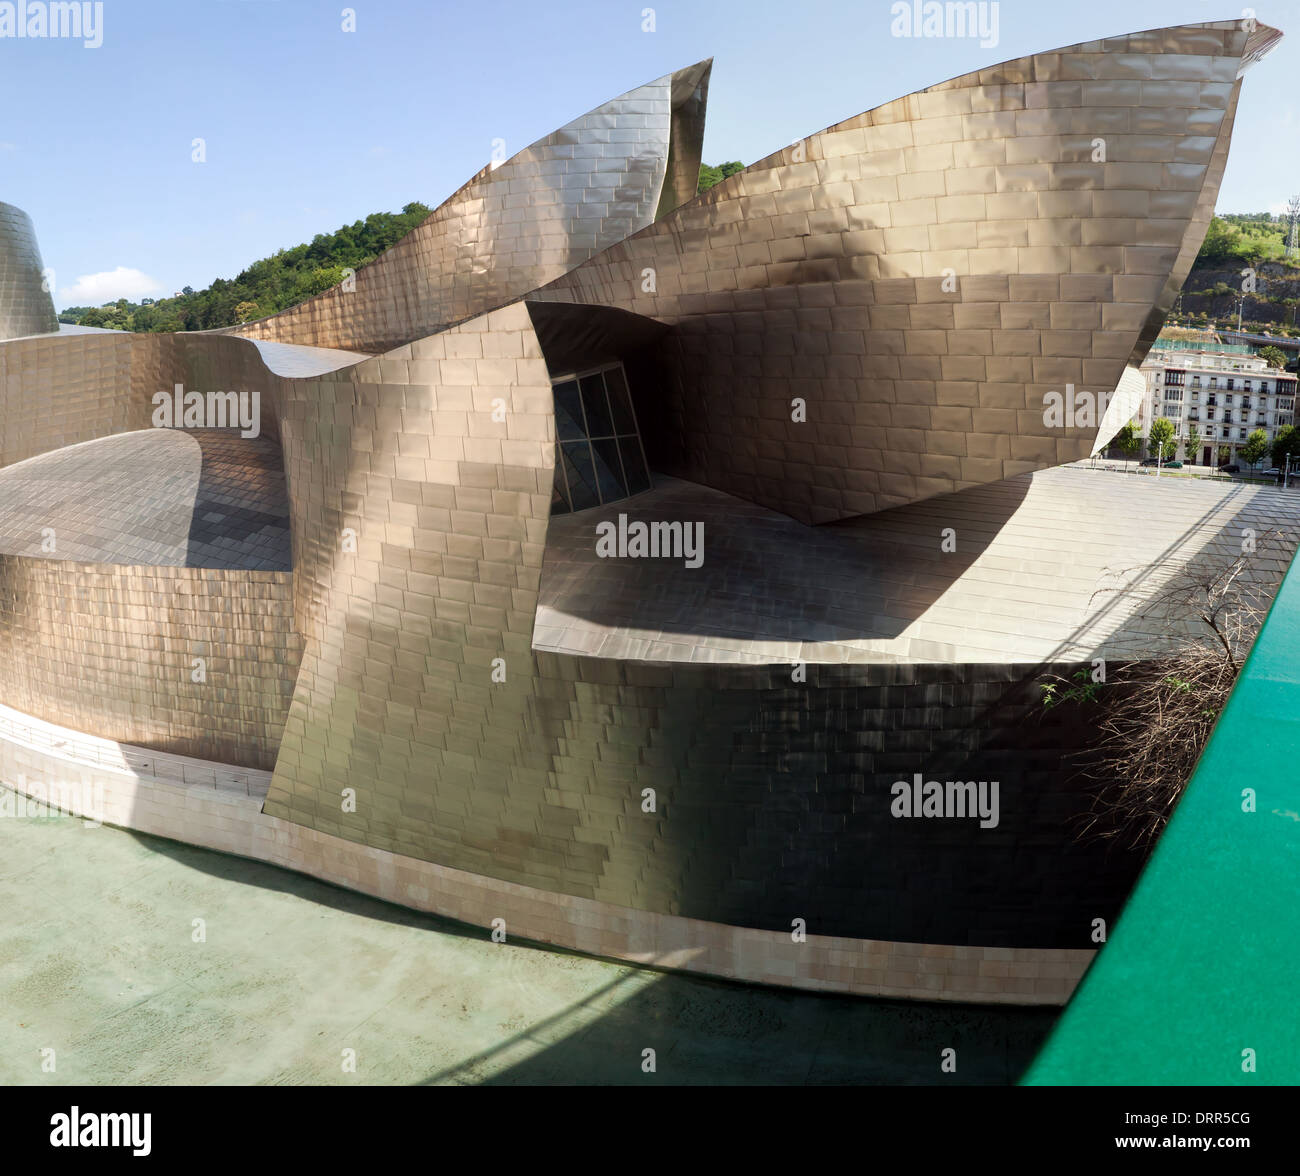 Dettagli architettonici del Museo Guggenheim, Bilbao, Spagna. Foto Stock